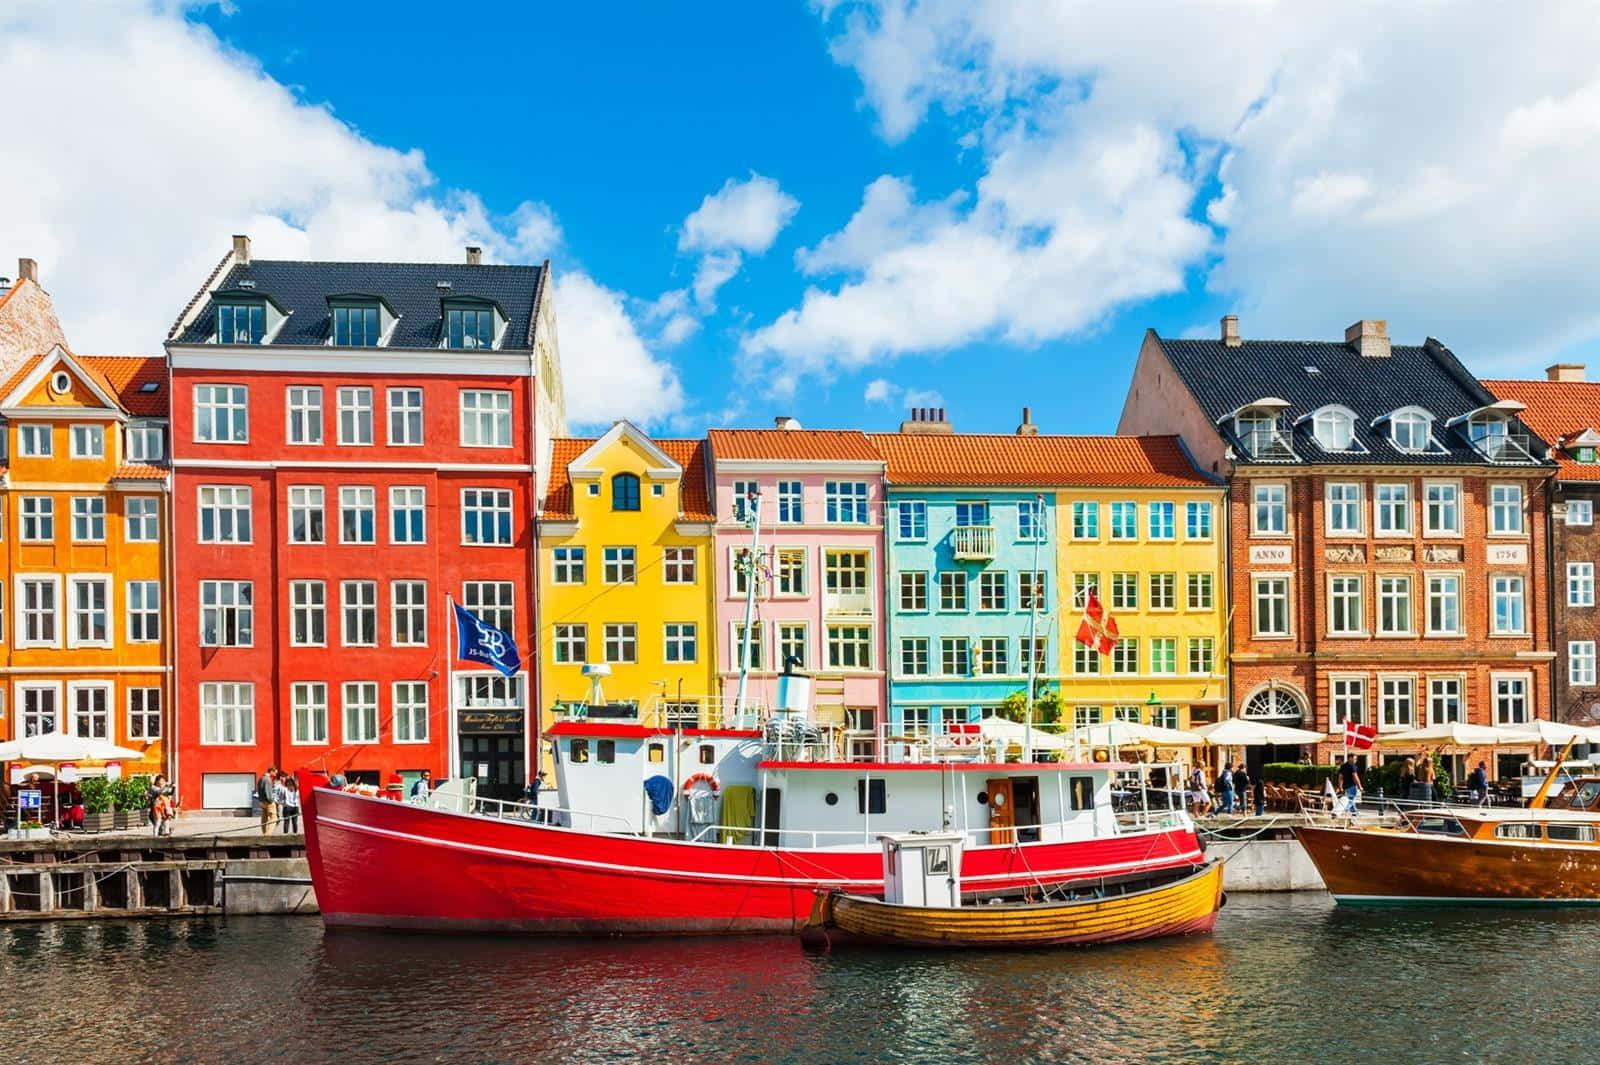 Nyhavn Pier Vibrant Destination 2017 Wallpaper: Udforsk den karakteristiske havn i Danmark med et dynamisk og farverigt motiv fra 2017. Wallpaper